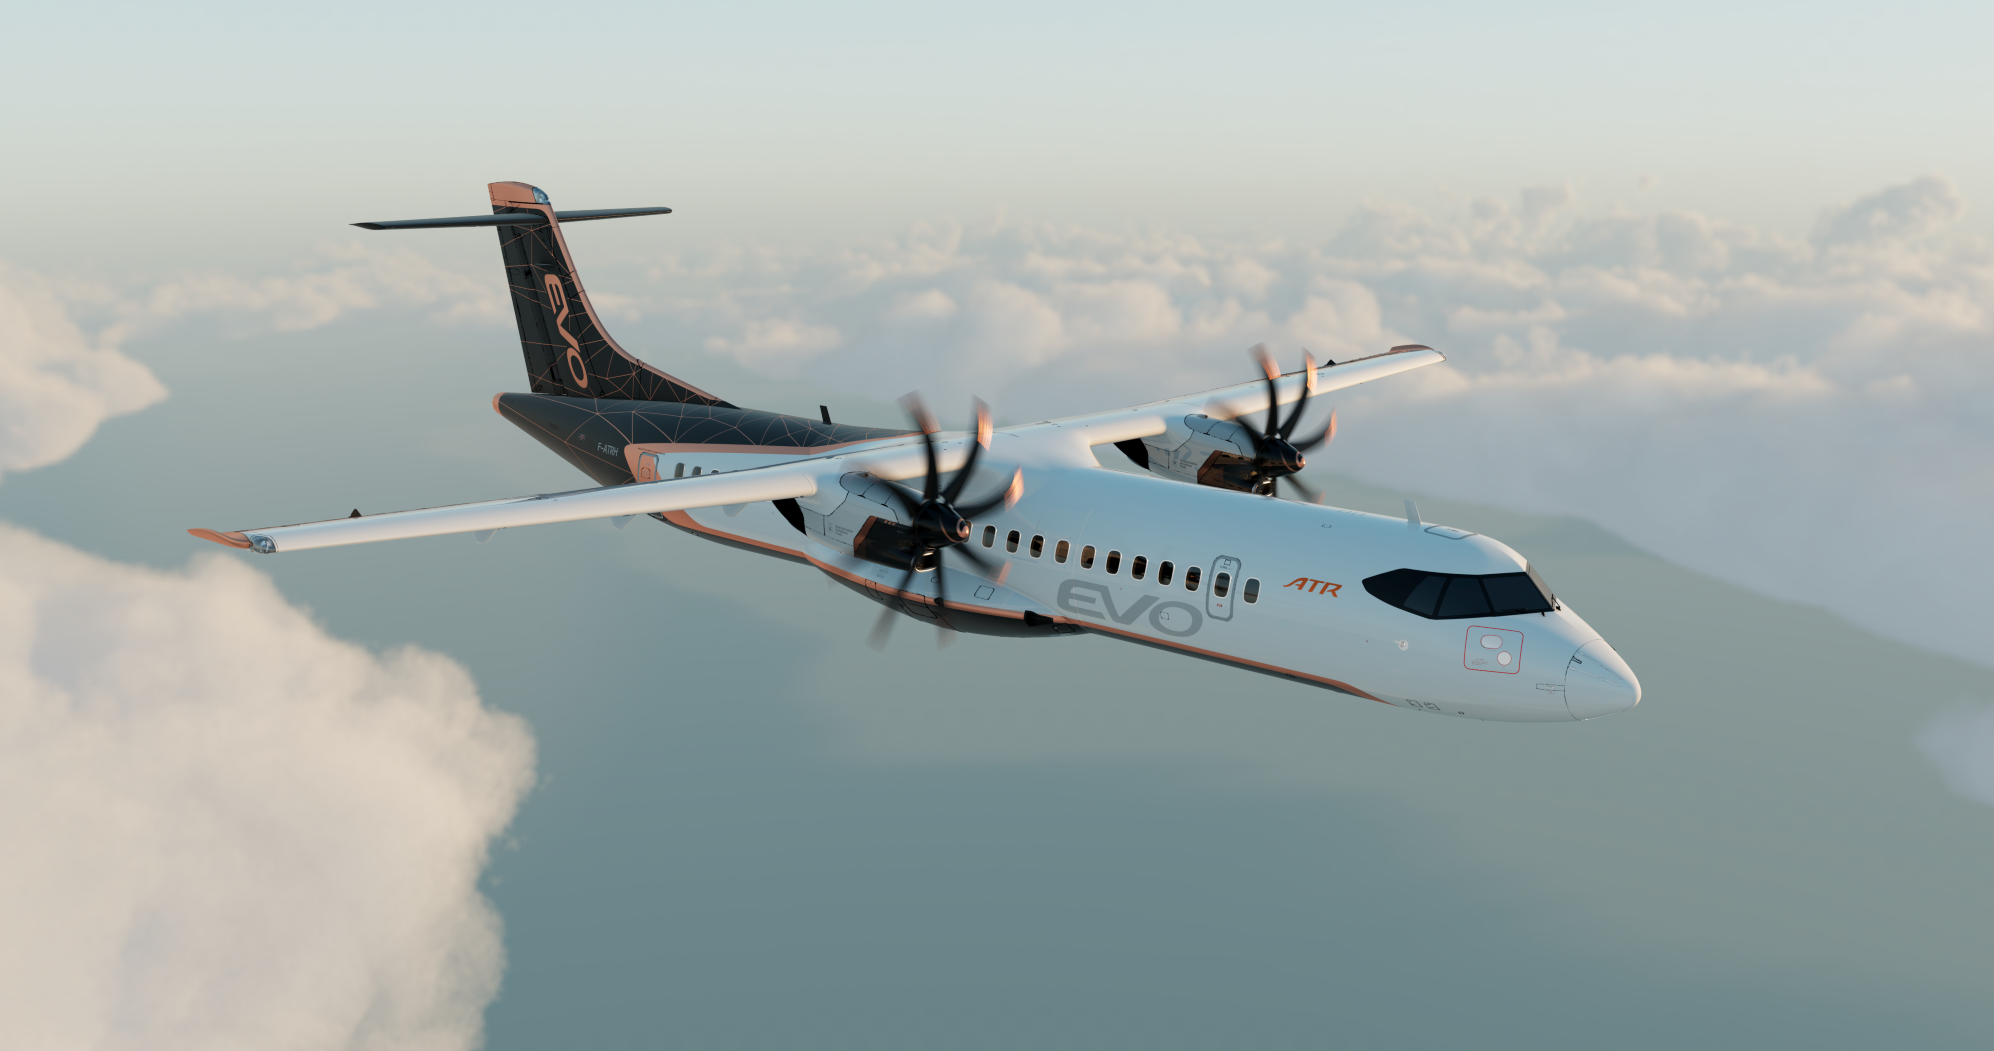 ATR prêt à lancer une nouvelle génération d'avions régionaux très éco-responsables